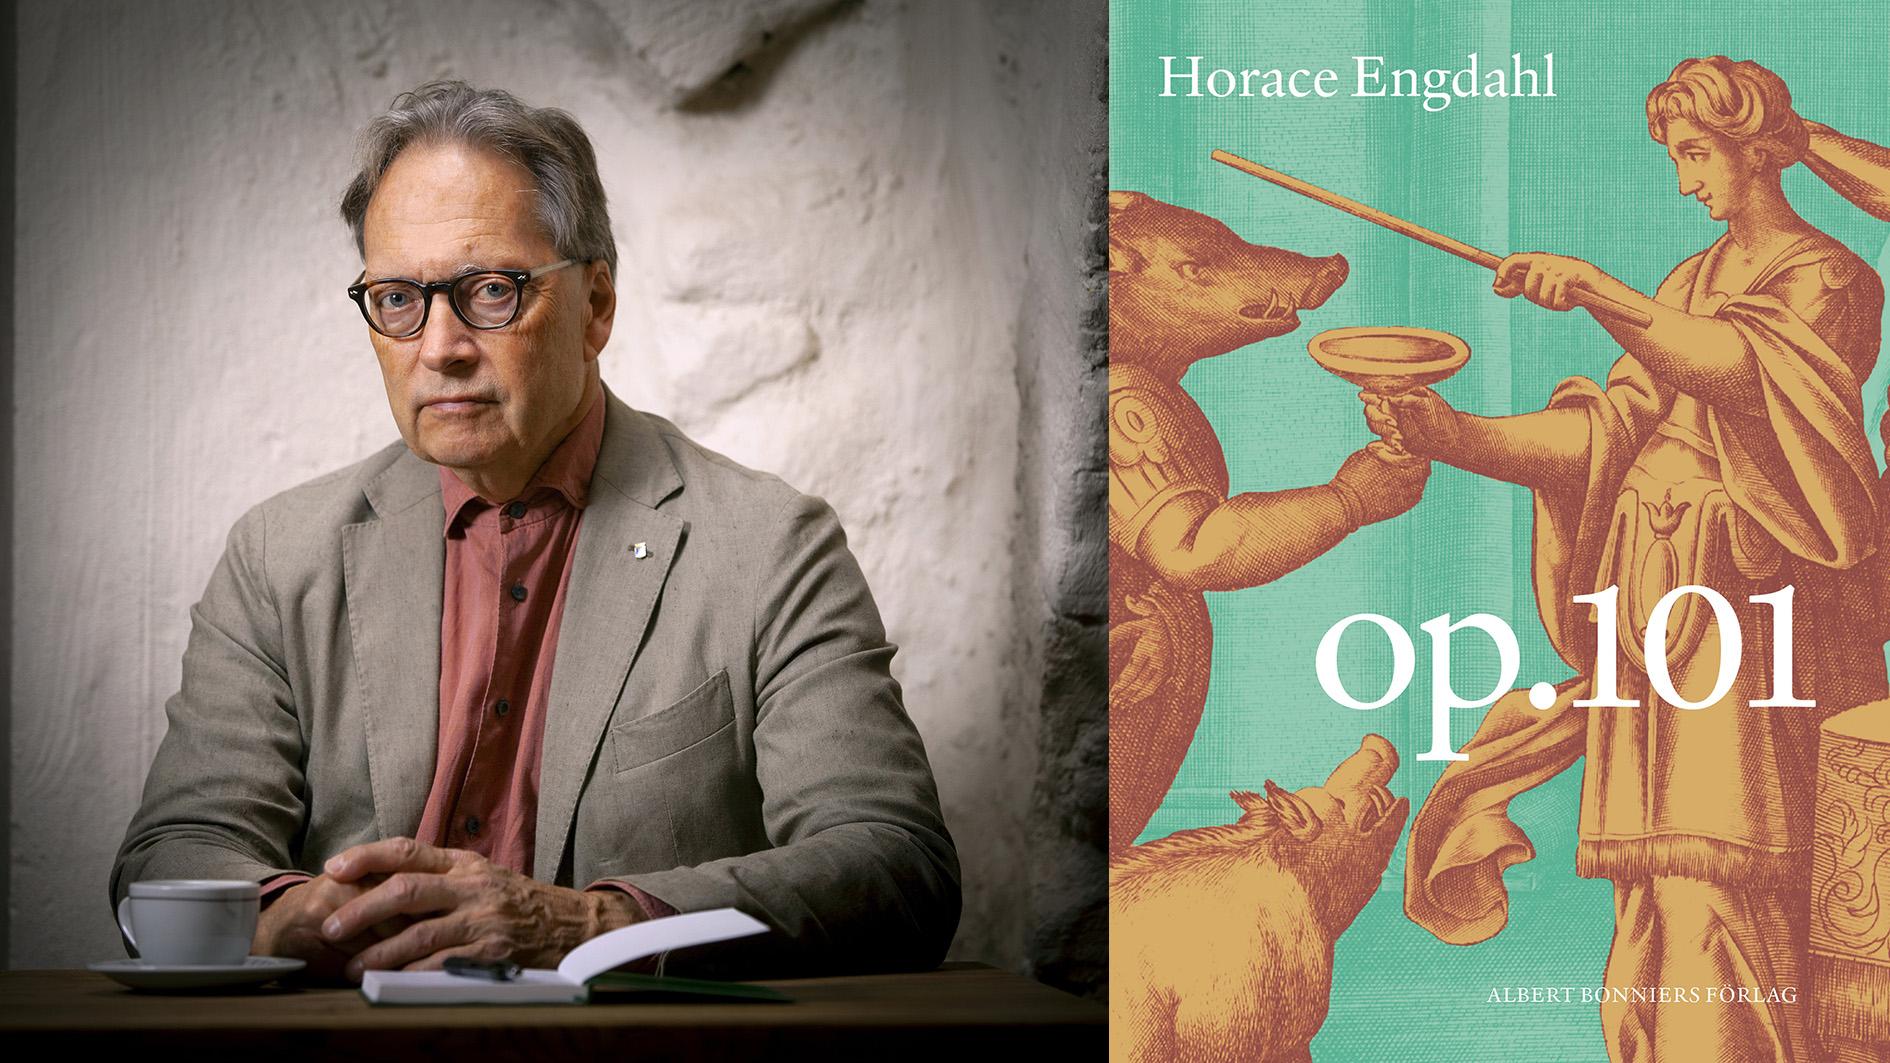 Horace Engdahl (född 1948), debuterade med essän ”Den romantiska texten” 1986, valdes in i Svenska Akademien 1997 och har utkommit med ett tiotal essä- och tankeböcker. 